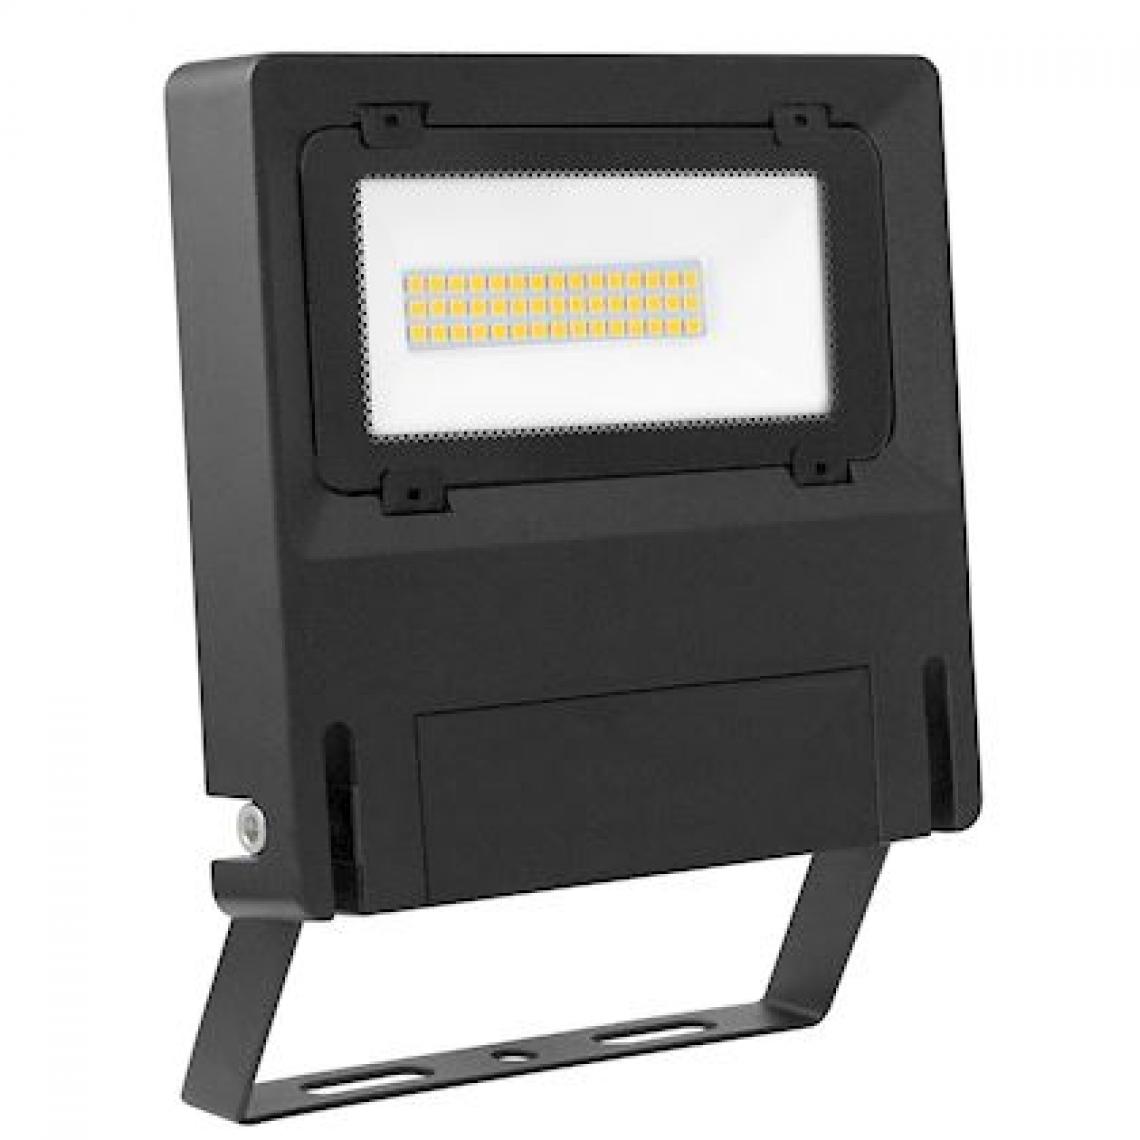 Aric - projecteur à led - aric michelle - 30w - 3000k - noir - aric 50788 - Projecteurs LED